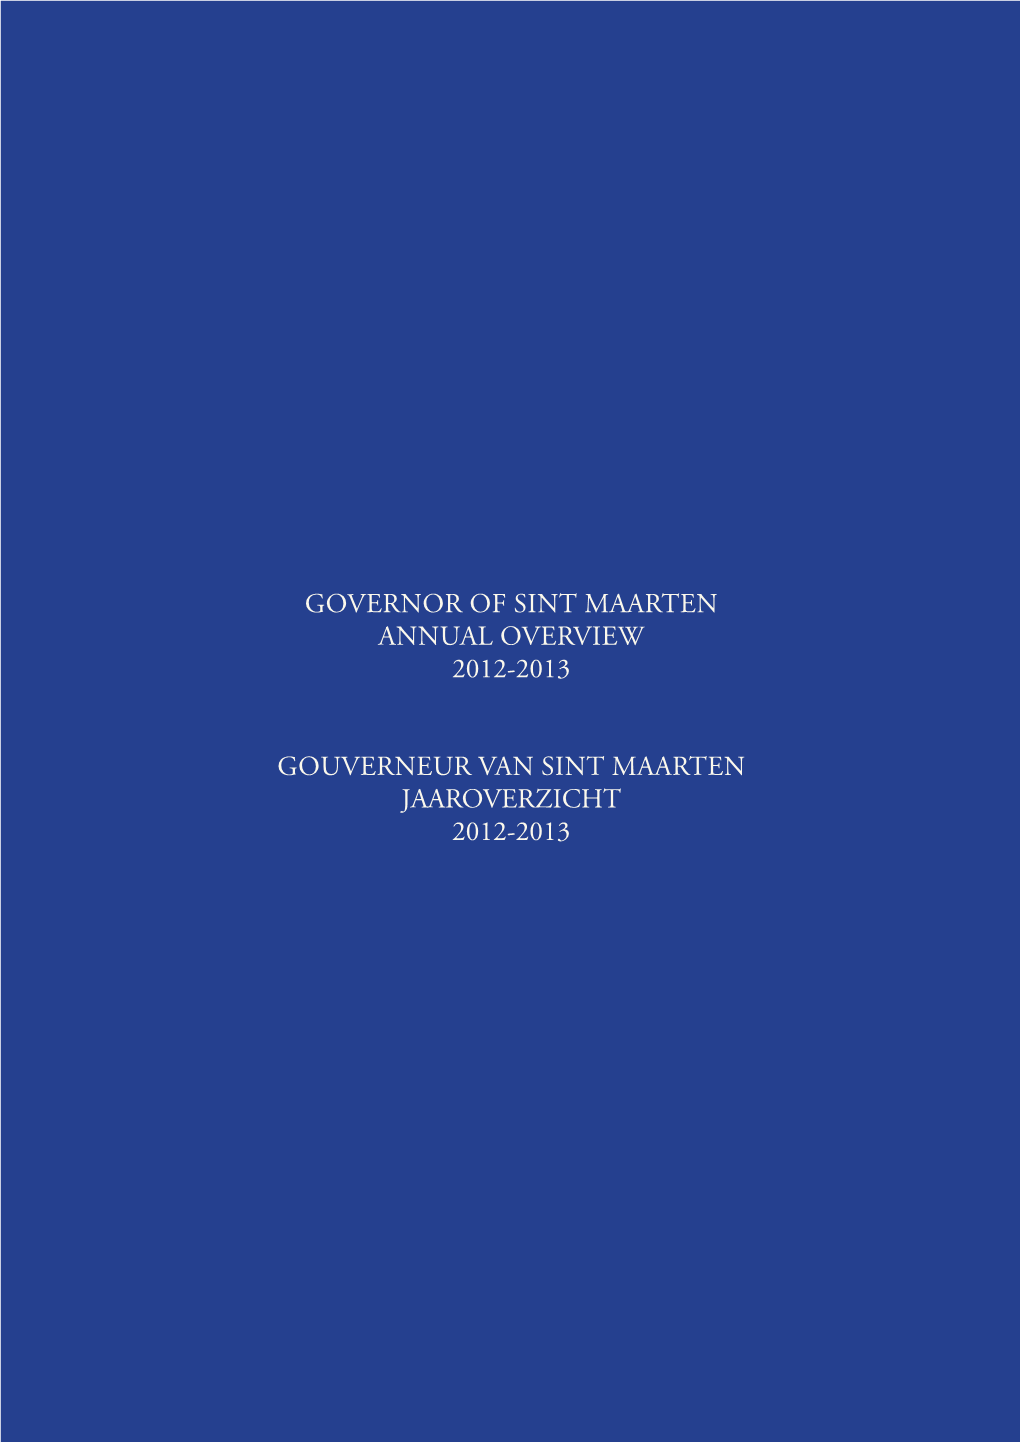 JAAROVERZICHT 2012-2013 © 2014 the Cabinet of the Governor of Sint Maarten